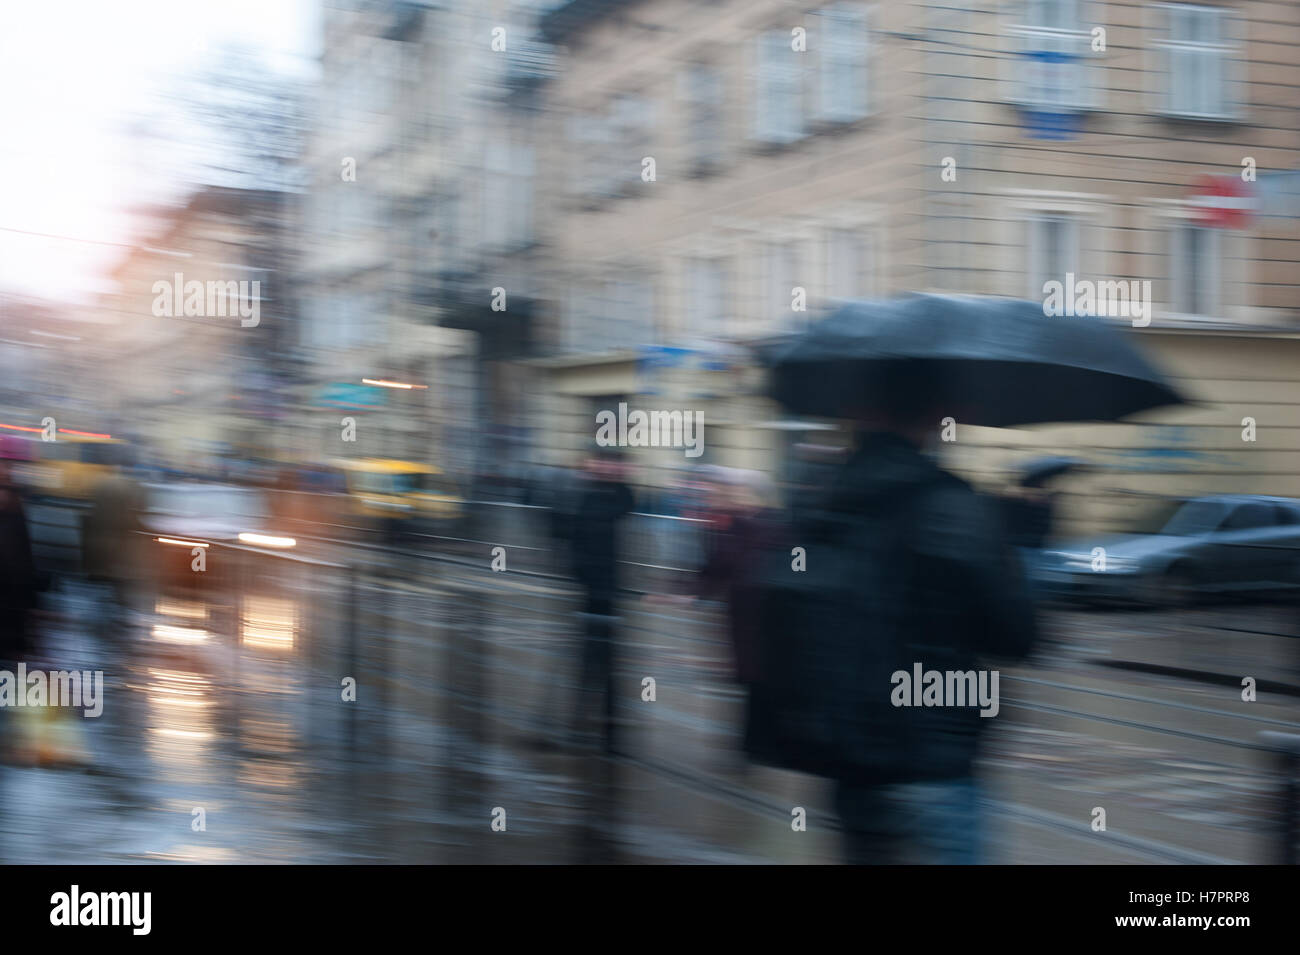 Les gens qui marchent dans la rue un jour de pluie motion blurred Banque D'Images